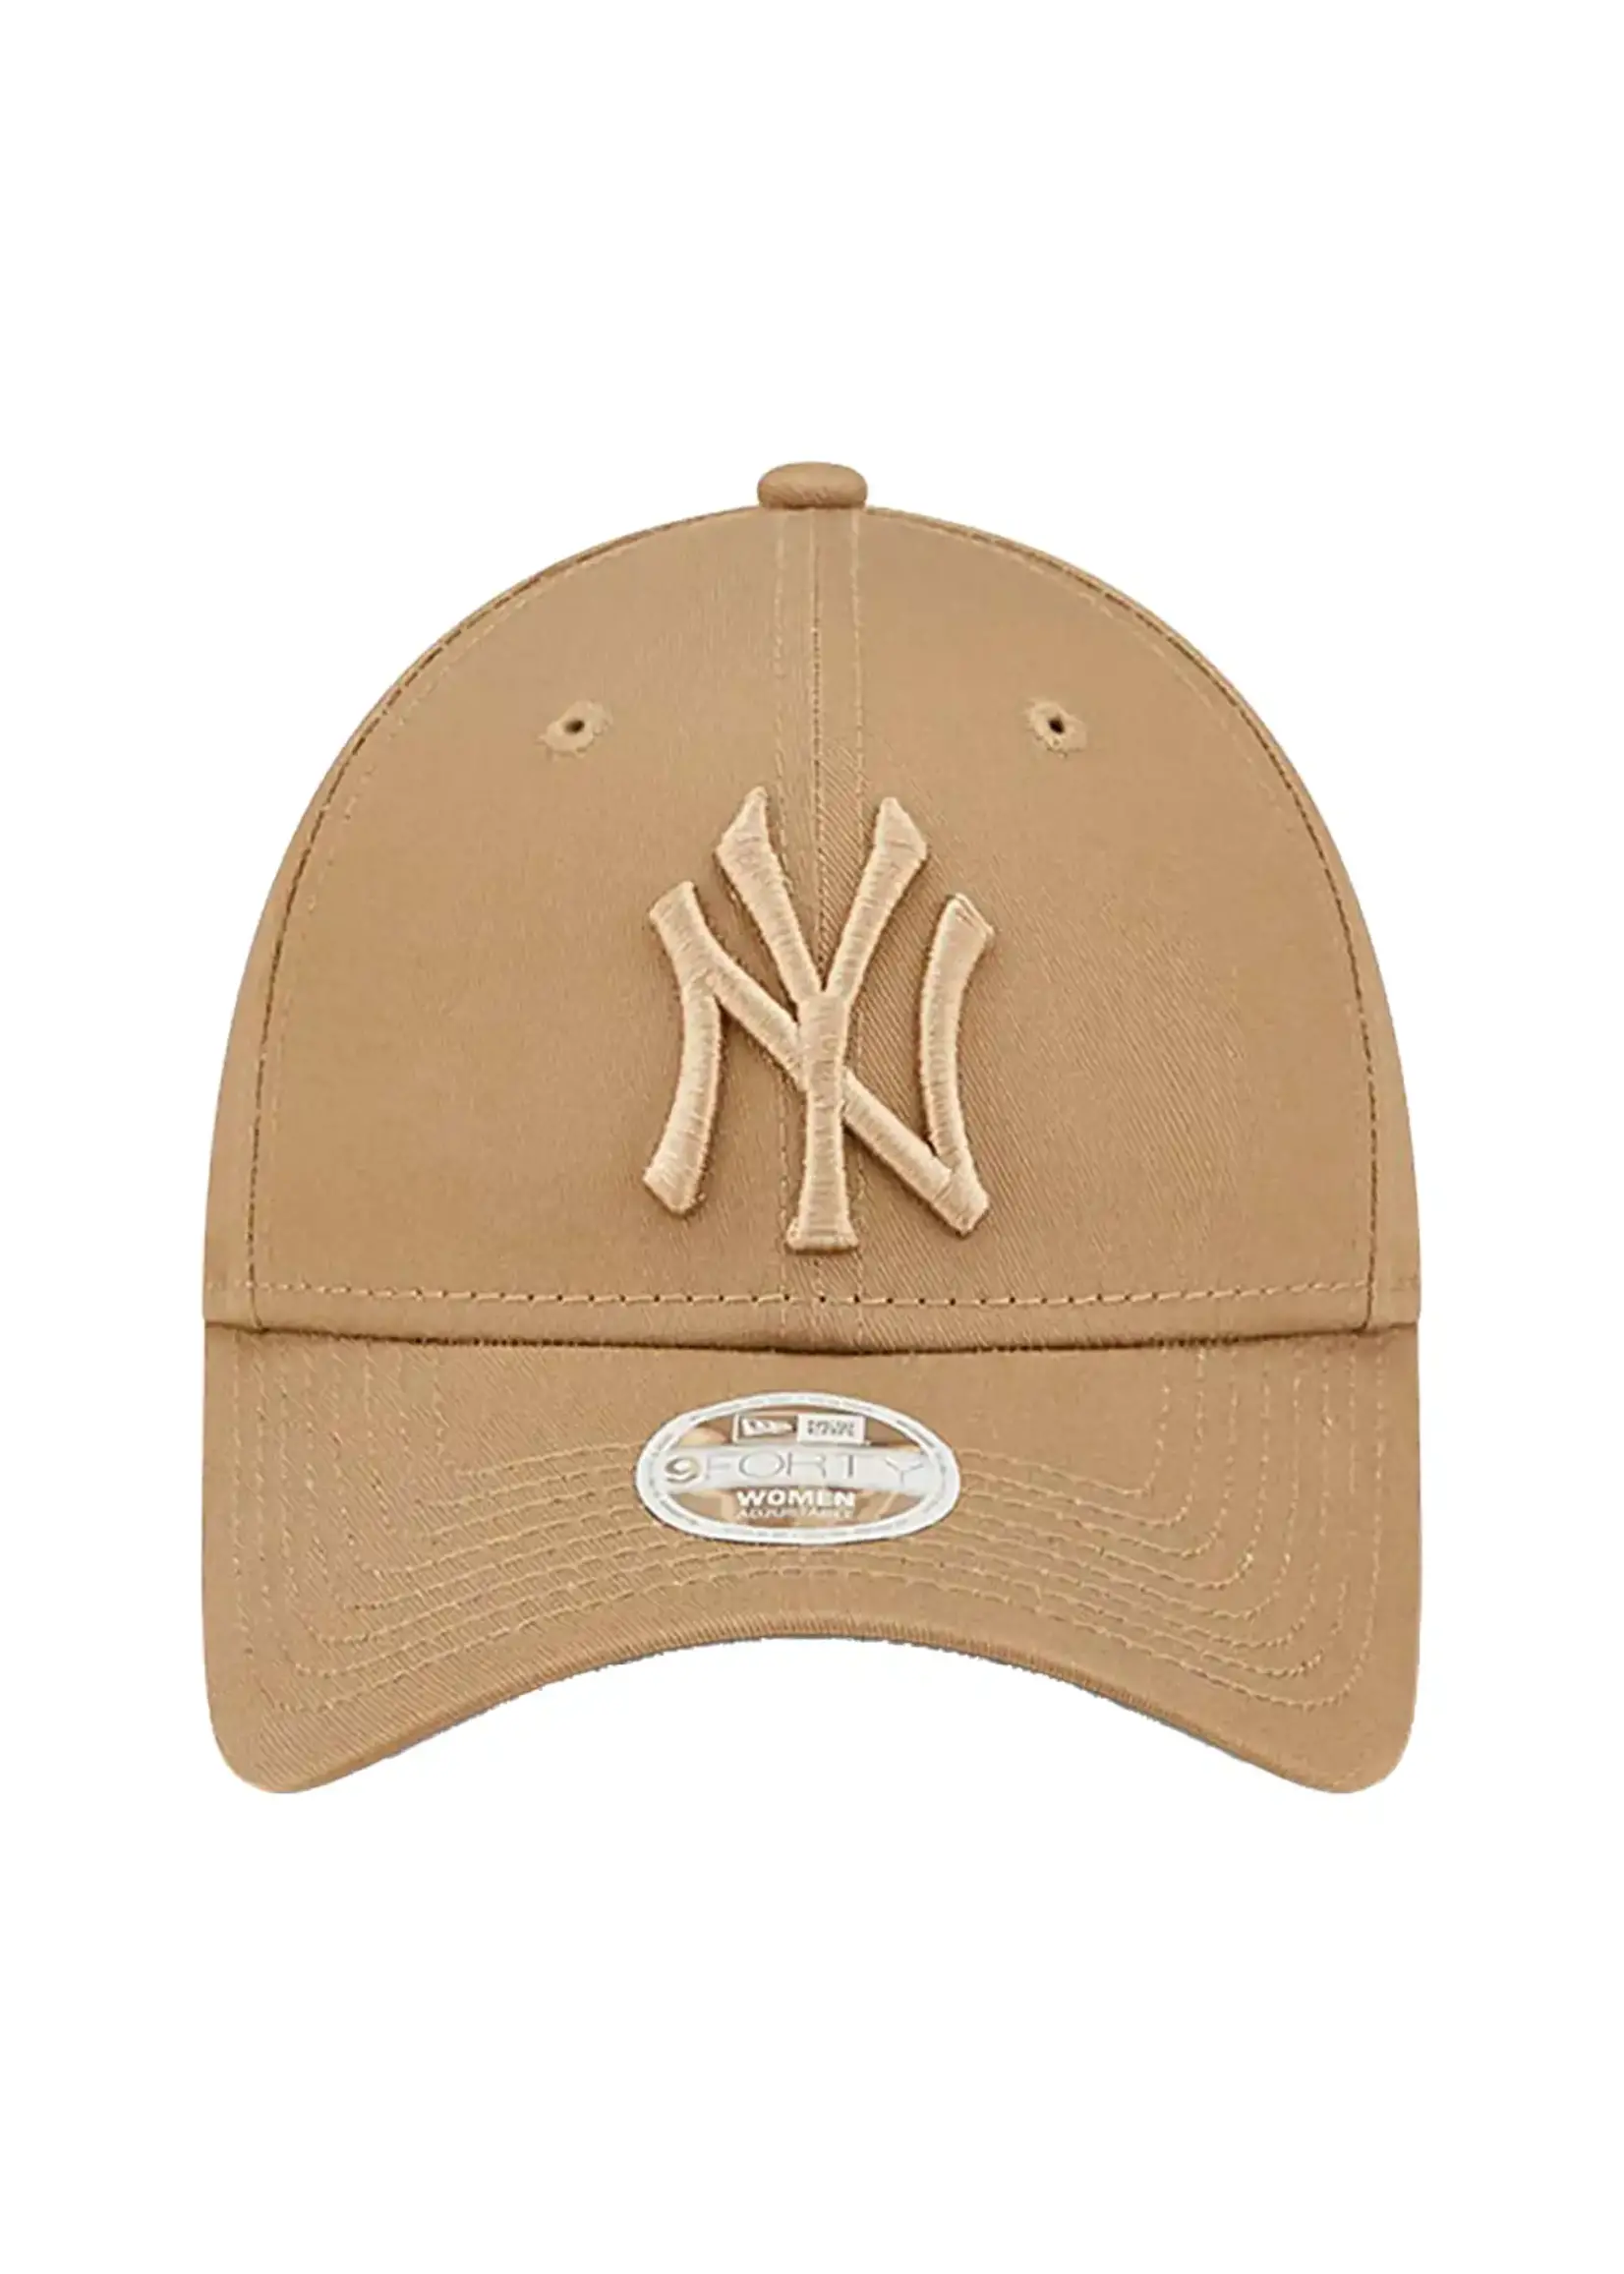 New Era New York Yankees Women 9Forty Cap Brown